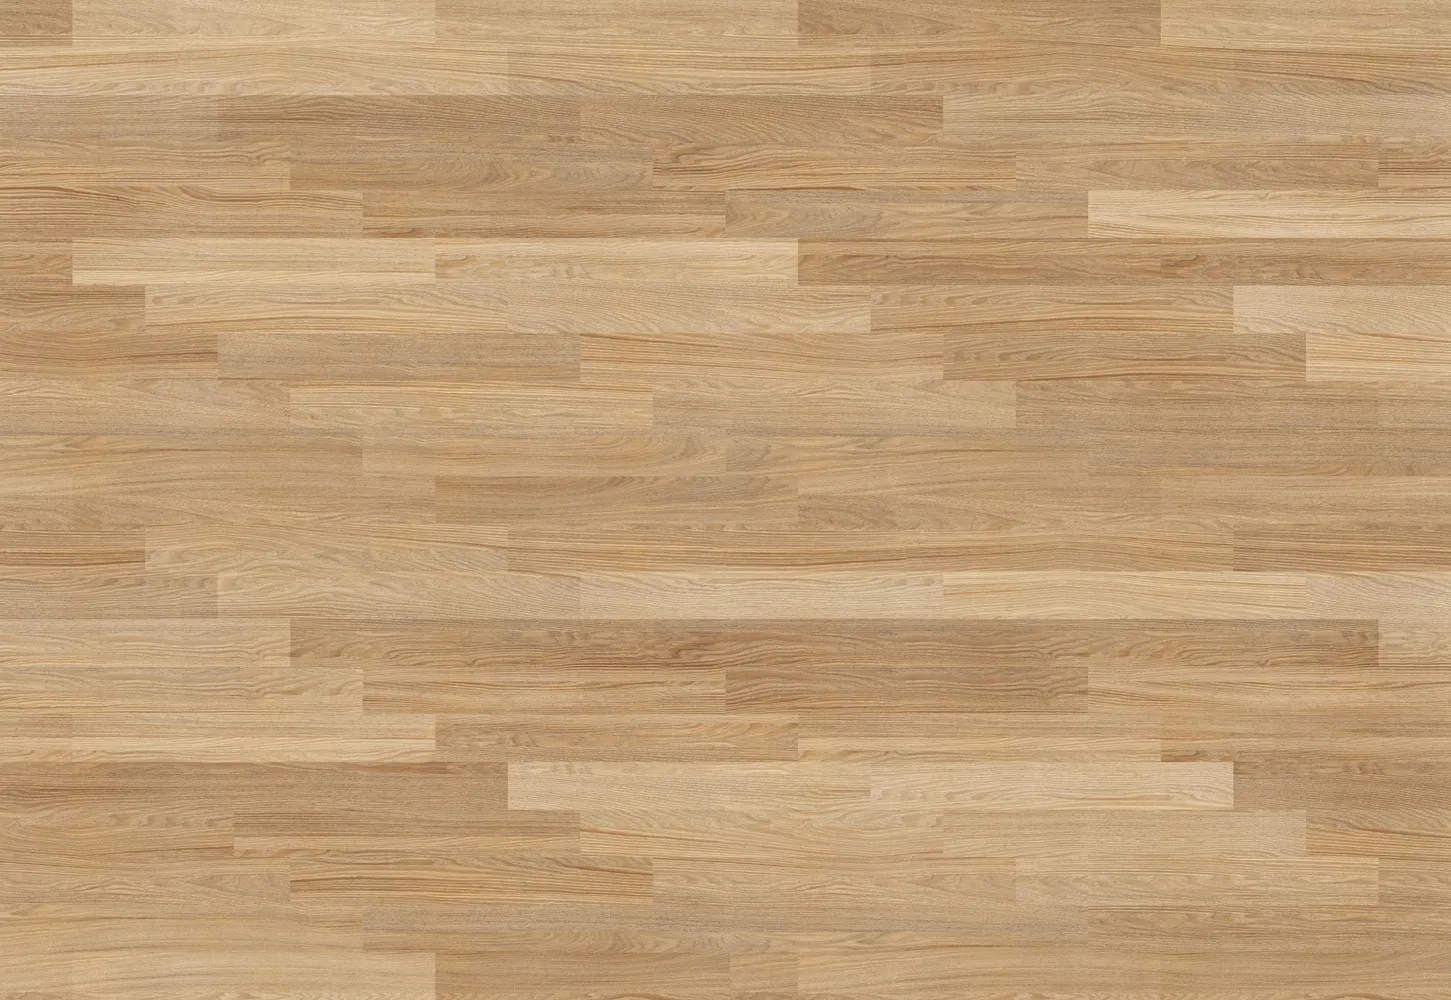 sample of light engineered hardwood flooring